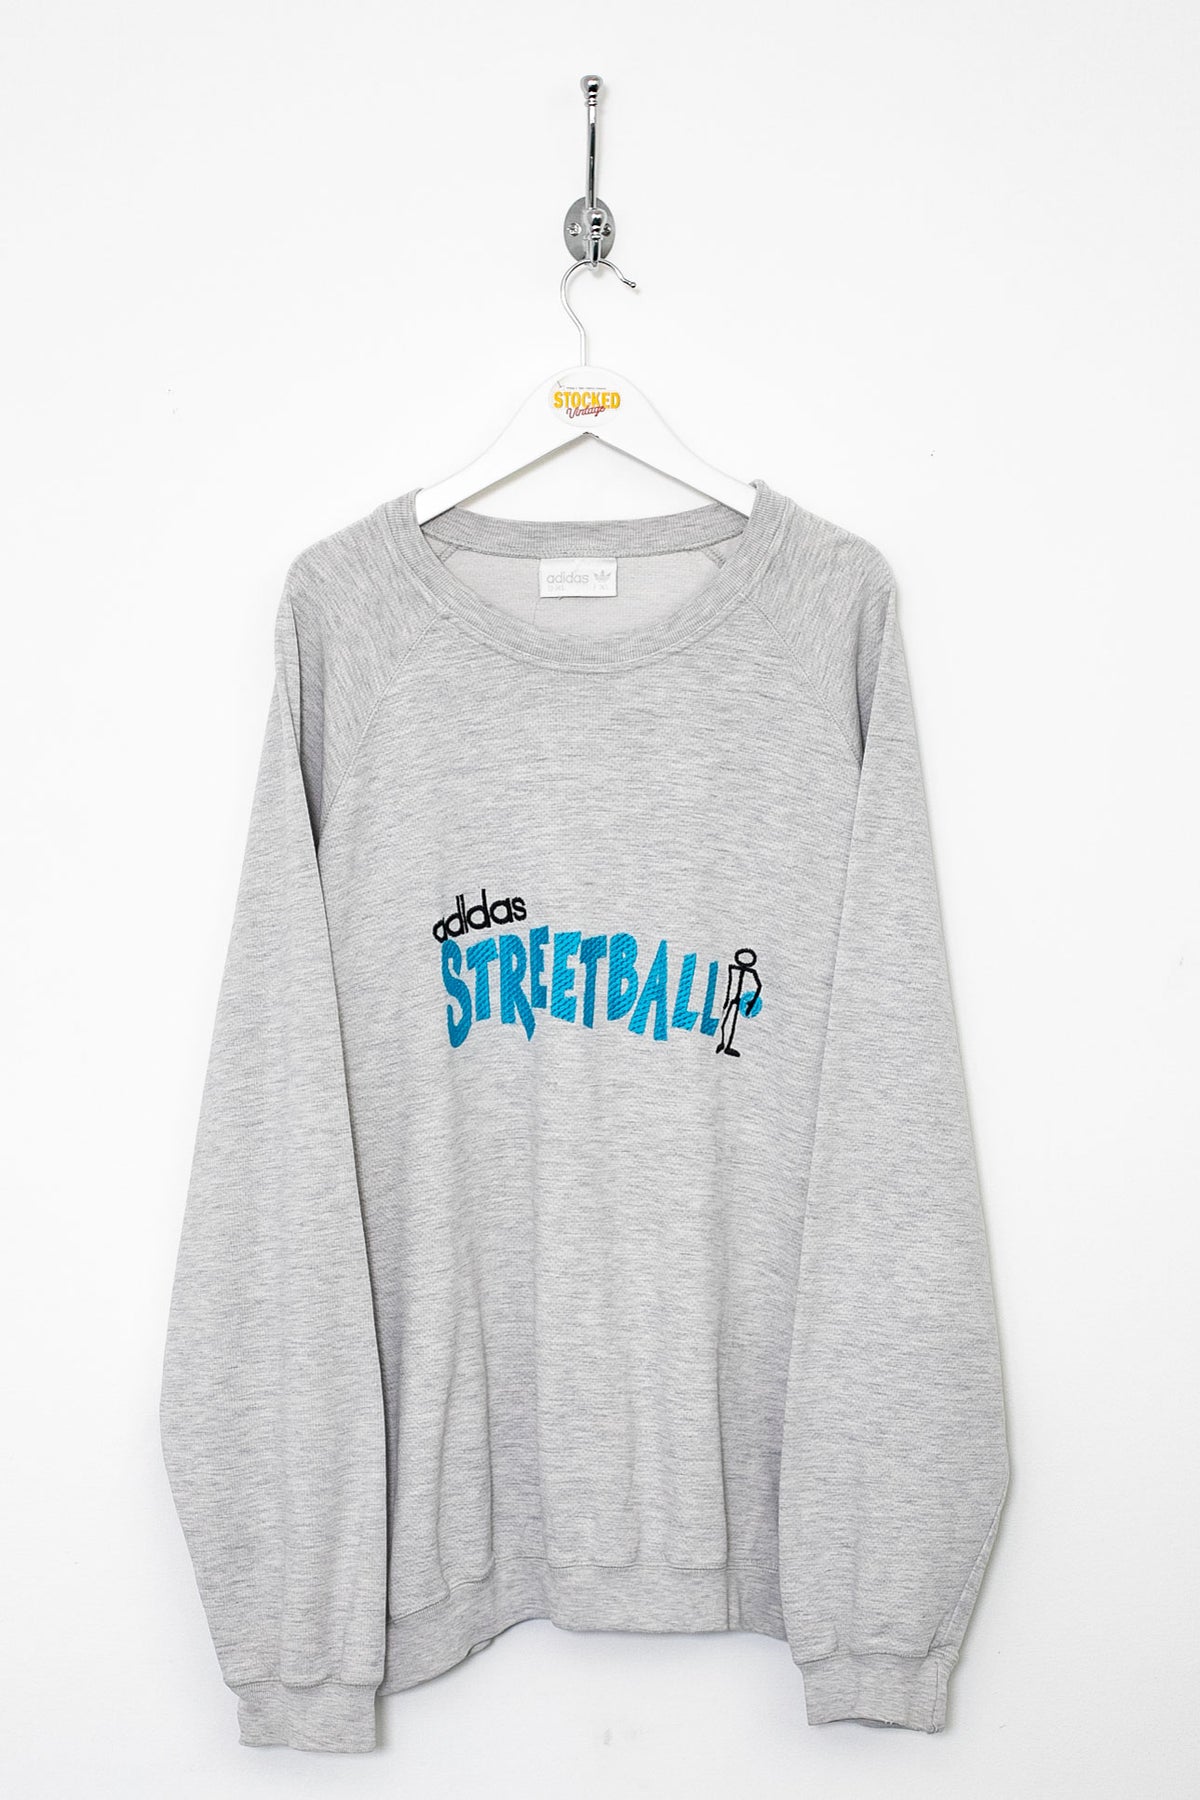 90s Adidas Streetball Sweatshirt (XL)